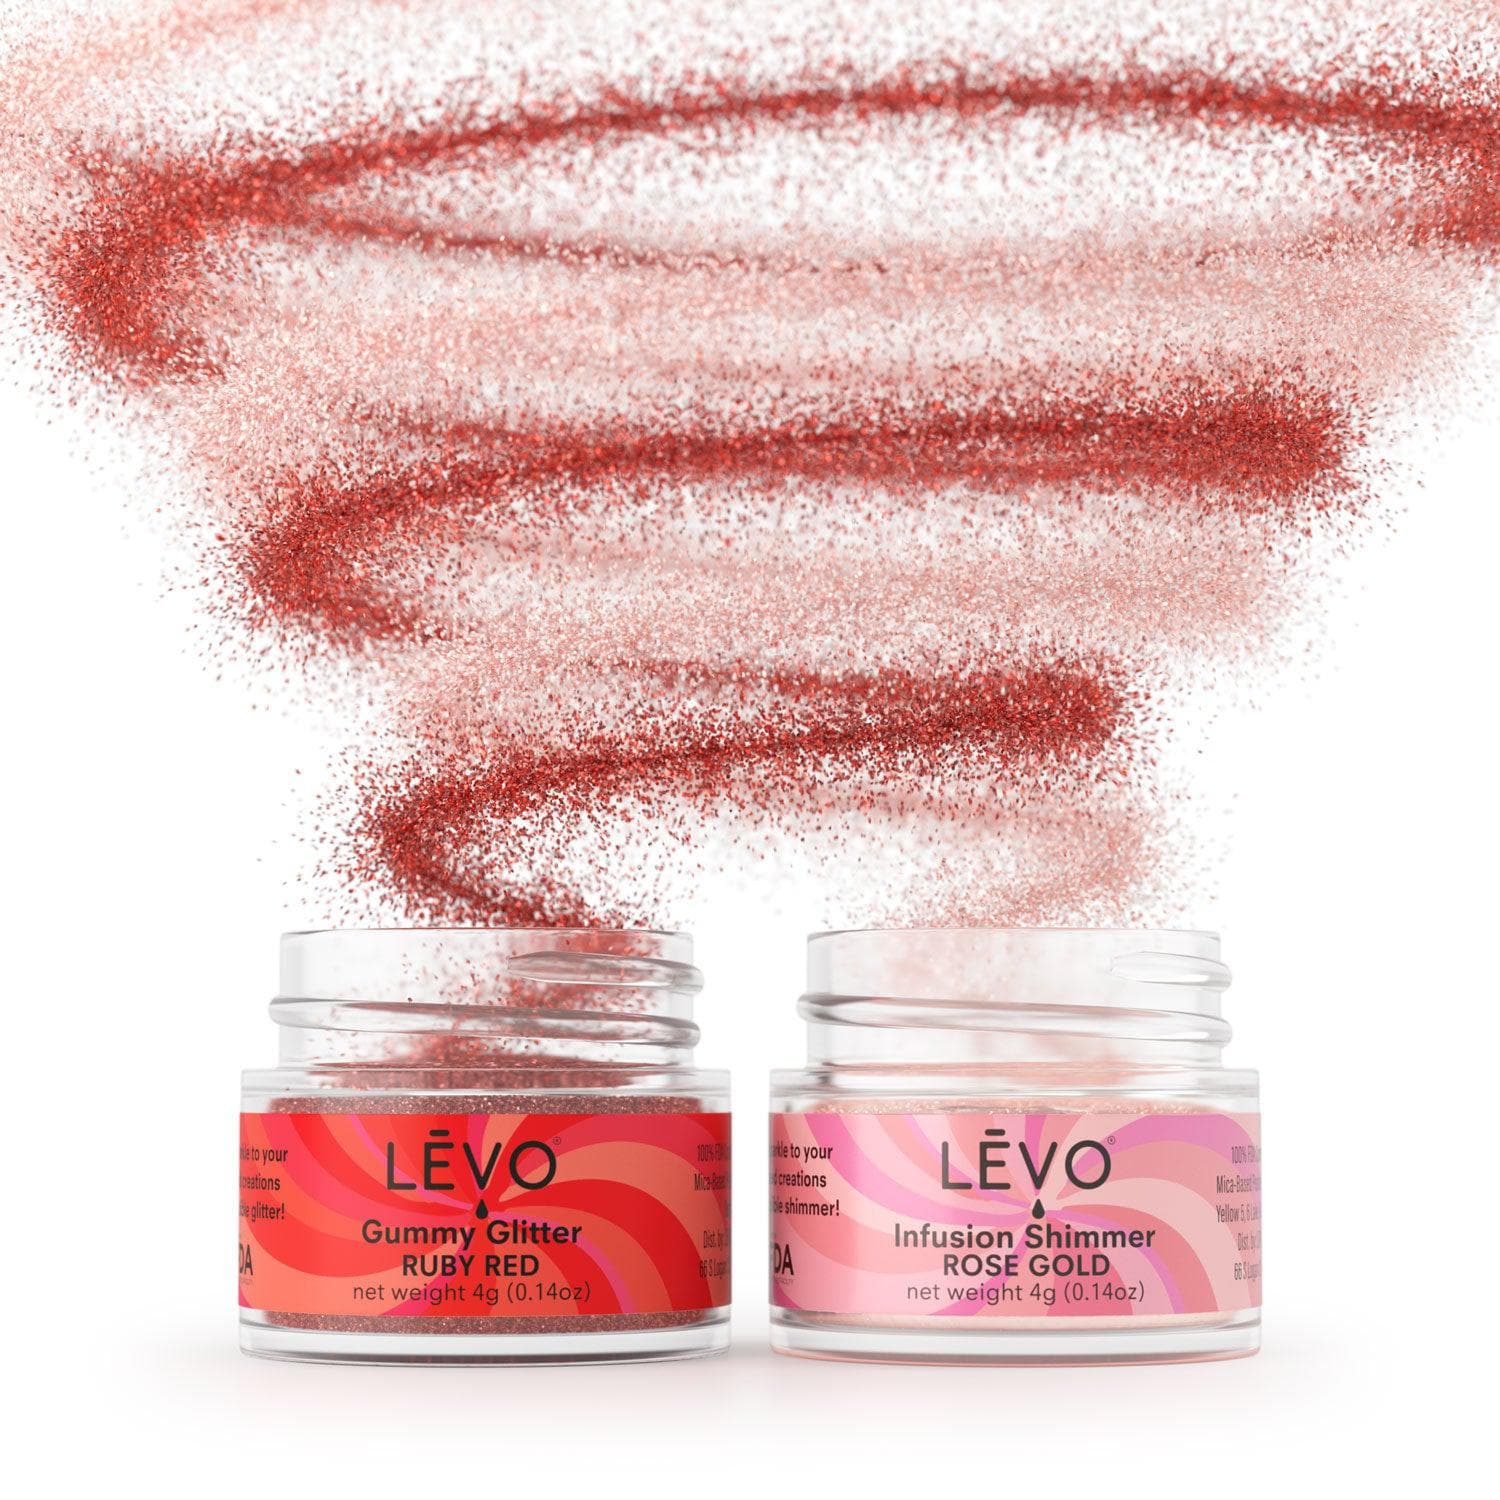 Gummy Glitter - LEVO Oil Infusion, Inc.